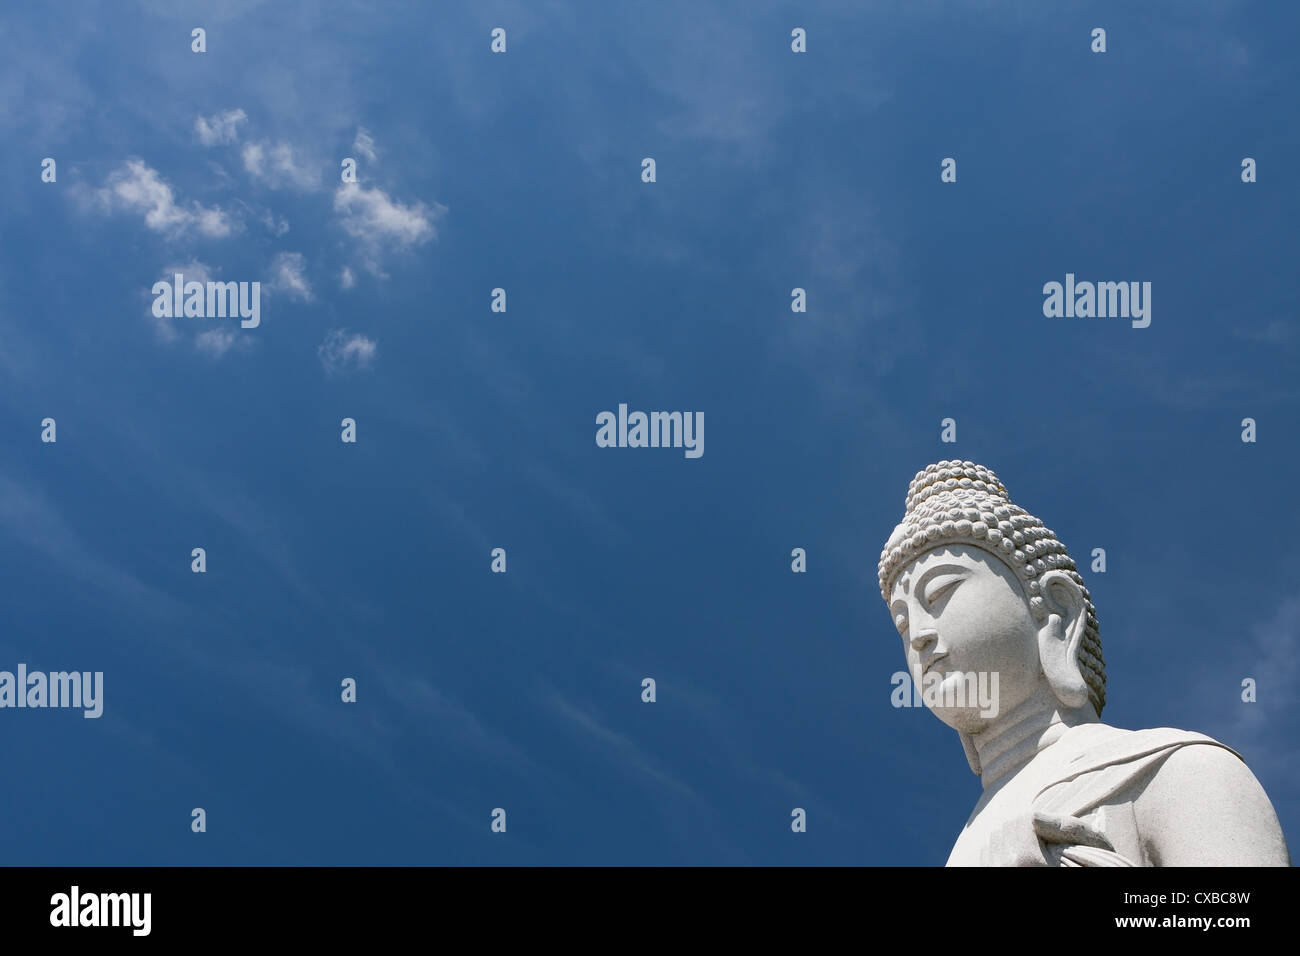 Escultura de Buda, estupendo para Asia Travel y los temas religiosos con el hermoso cielo azul. Foto de stock